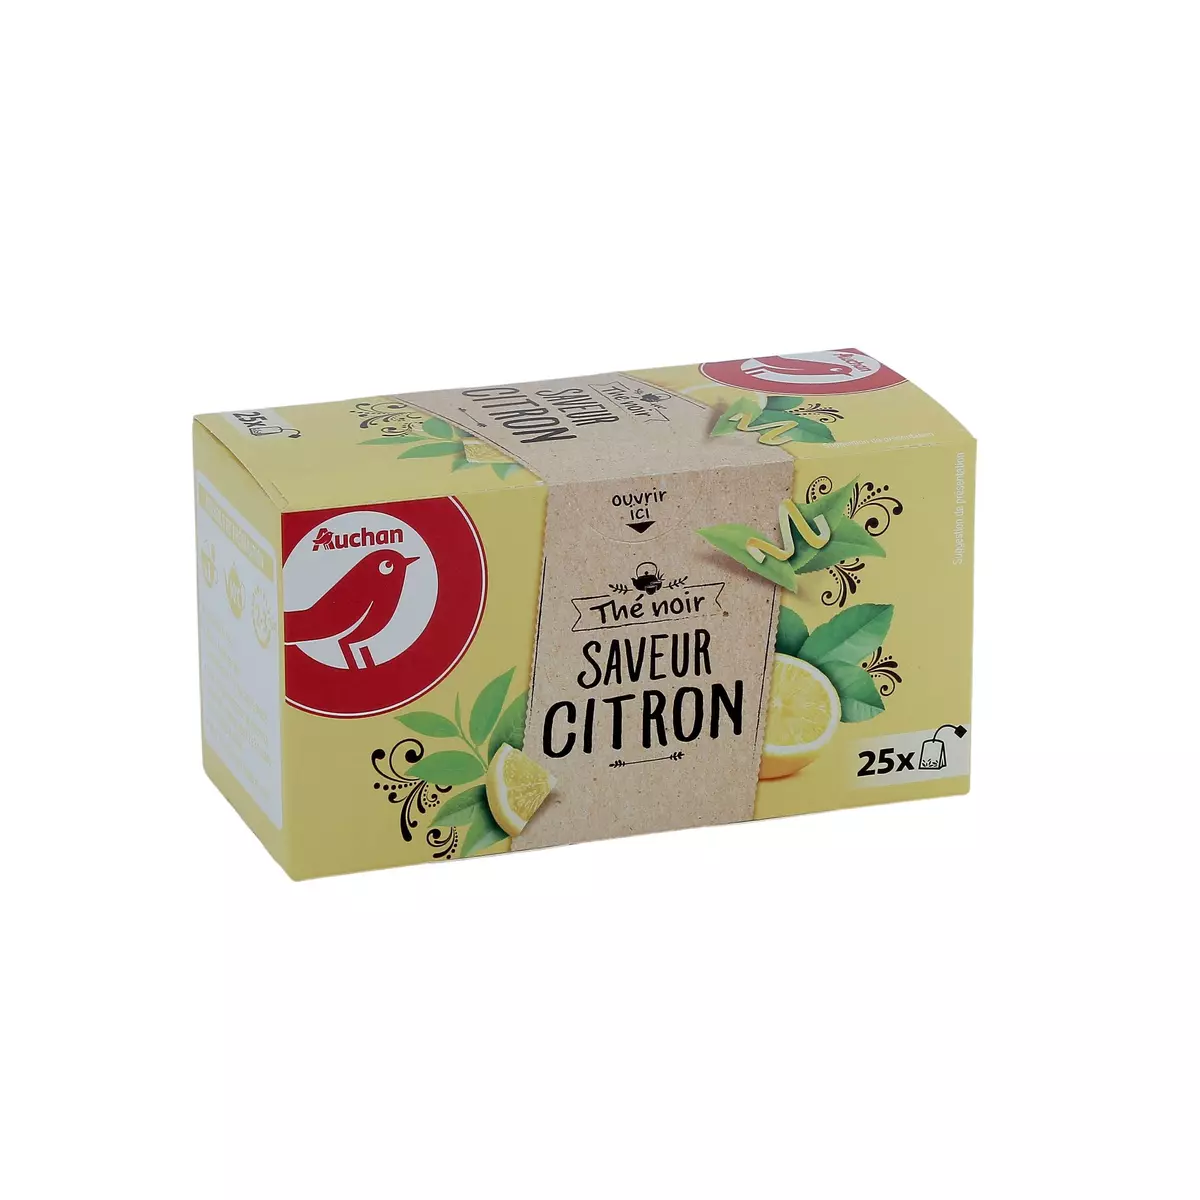 Thé vert gingembre citron Bio Kusmi Tea - Boîte de 25 sachets sur